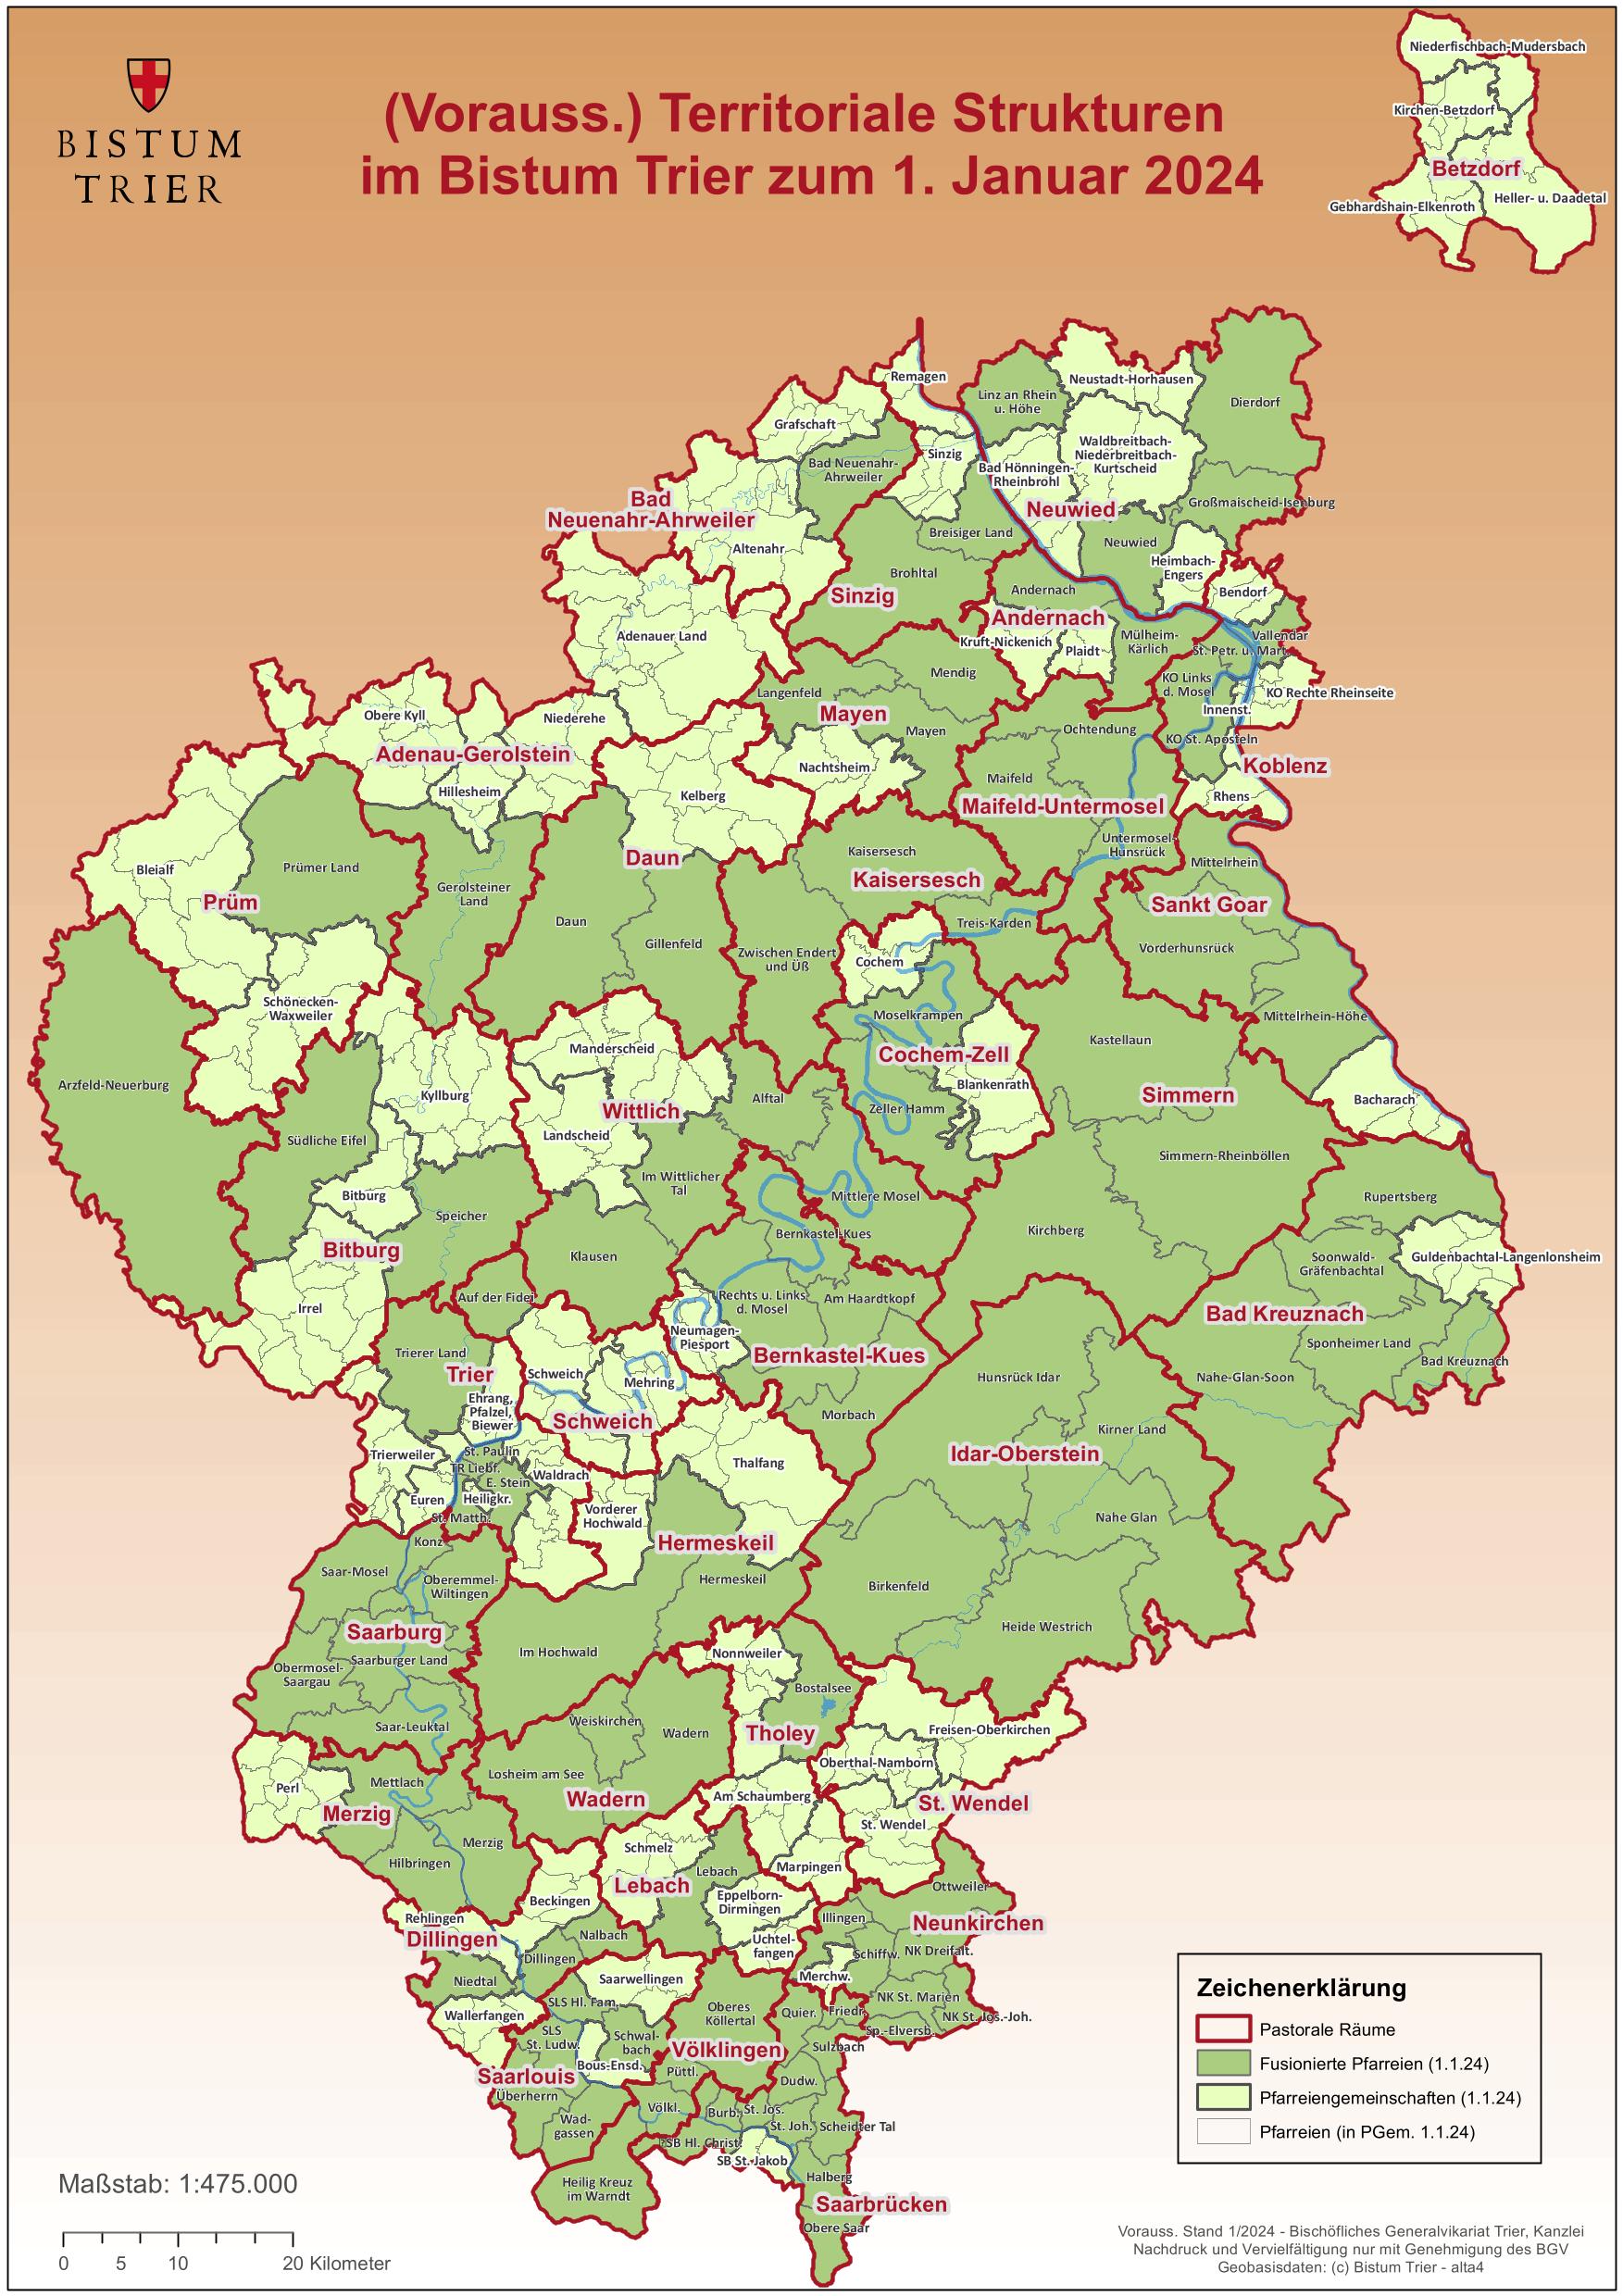 (Vorauss.) Territoriale Strukturen im Bistum Trier zum 1. Januar 2024